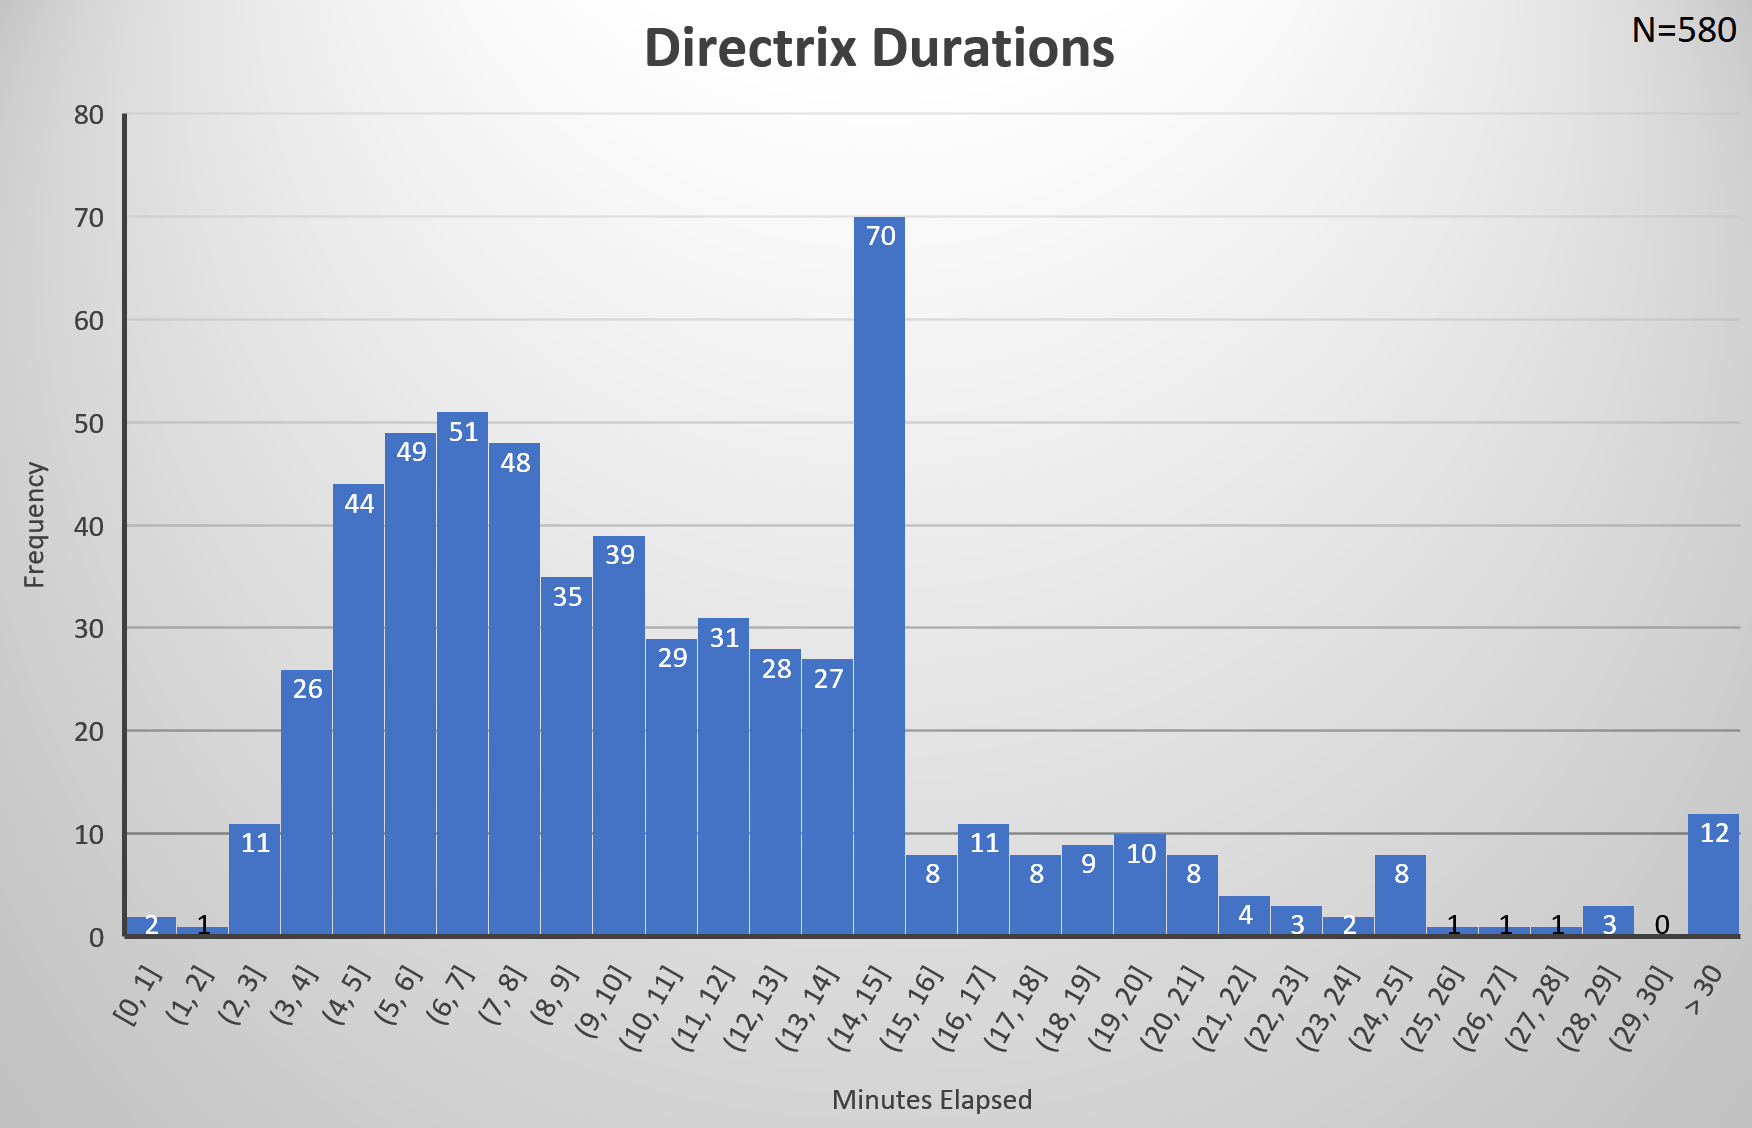 Directrix Distribution